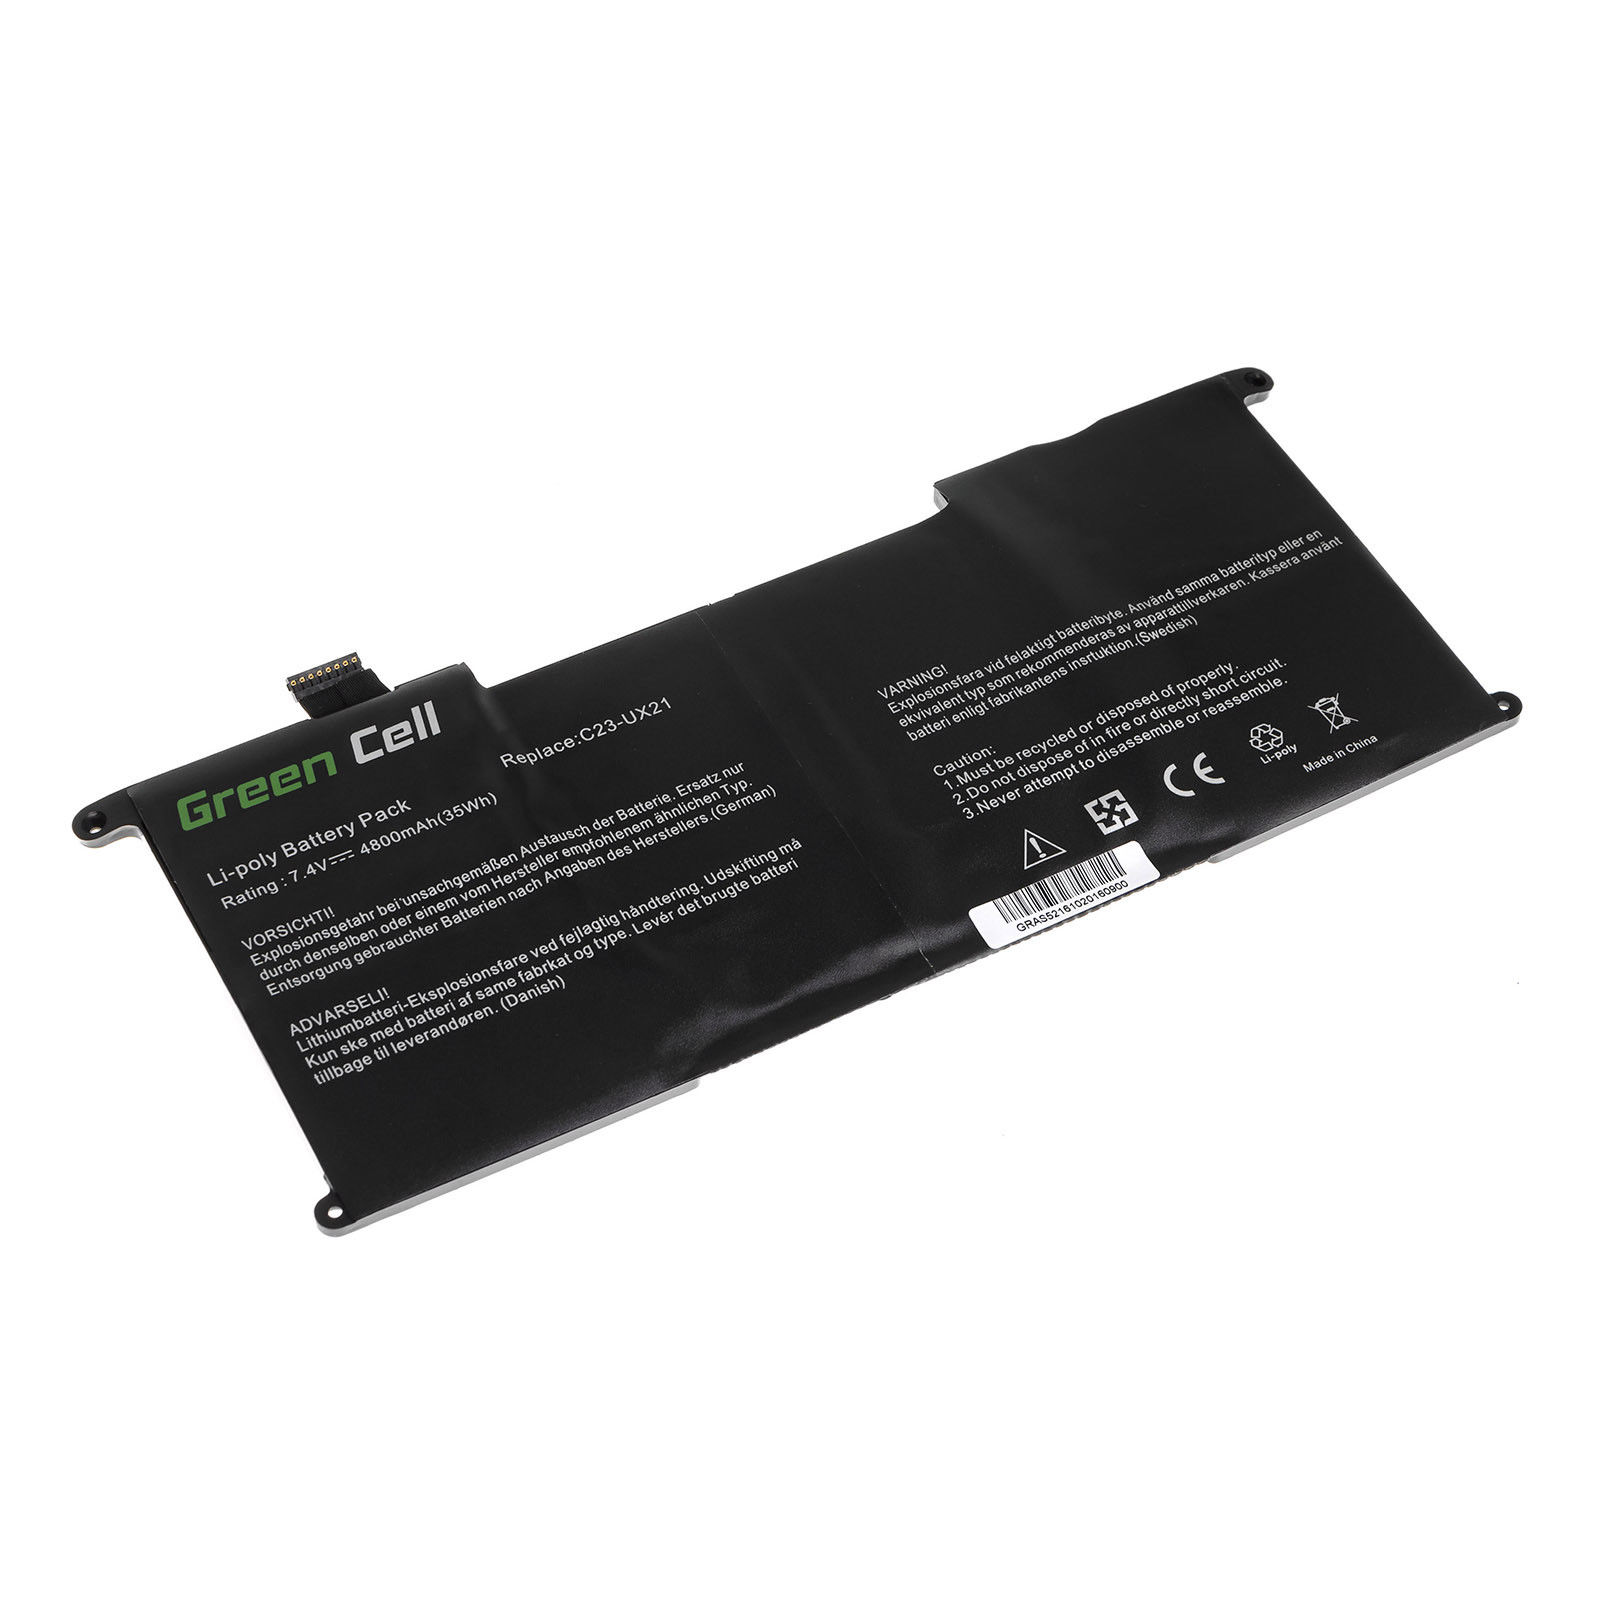 Asus UX21 Ultrabook UX21 UX21A UX21E UX21E-DH52 C23U kompatibelt batterier - Trykk på bildet for å lukke